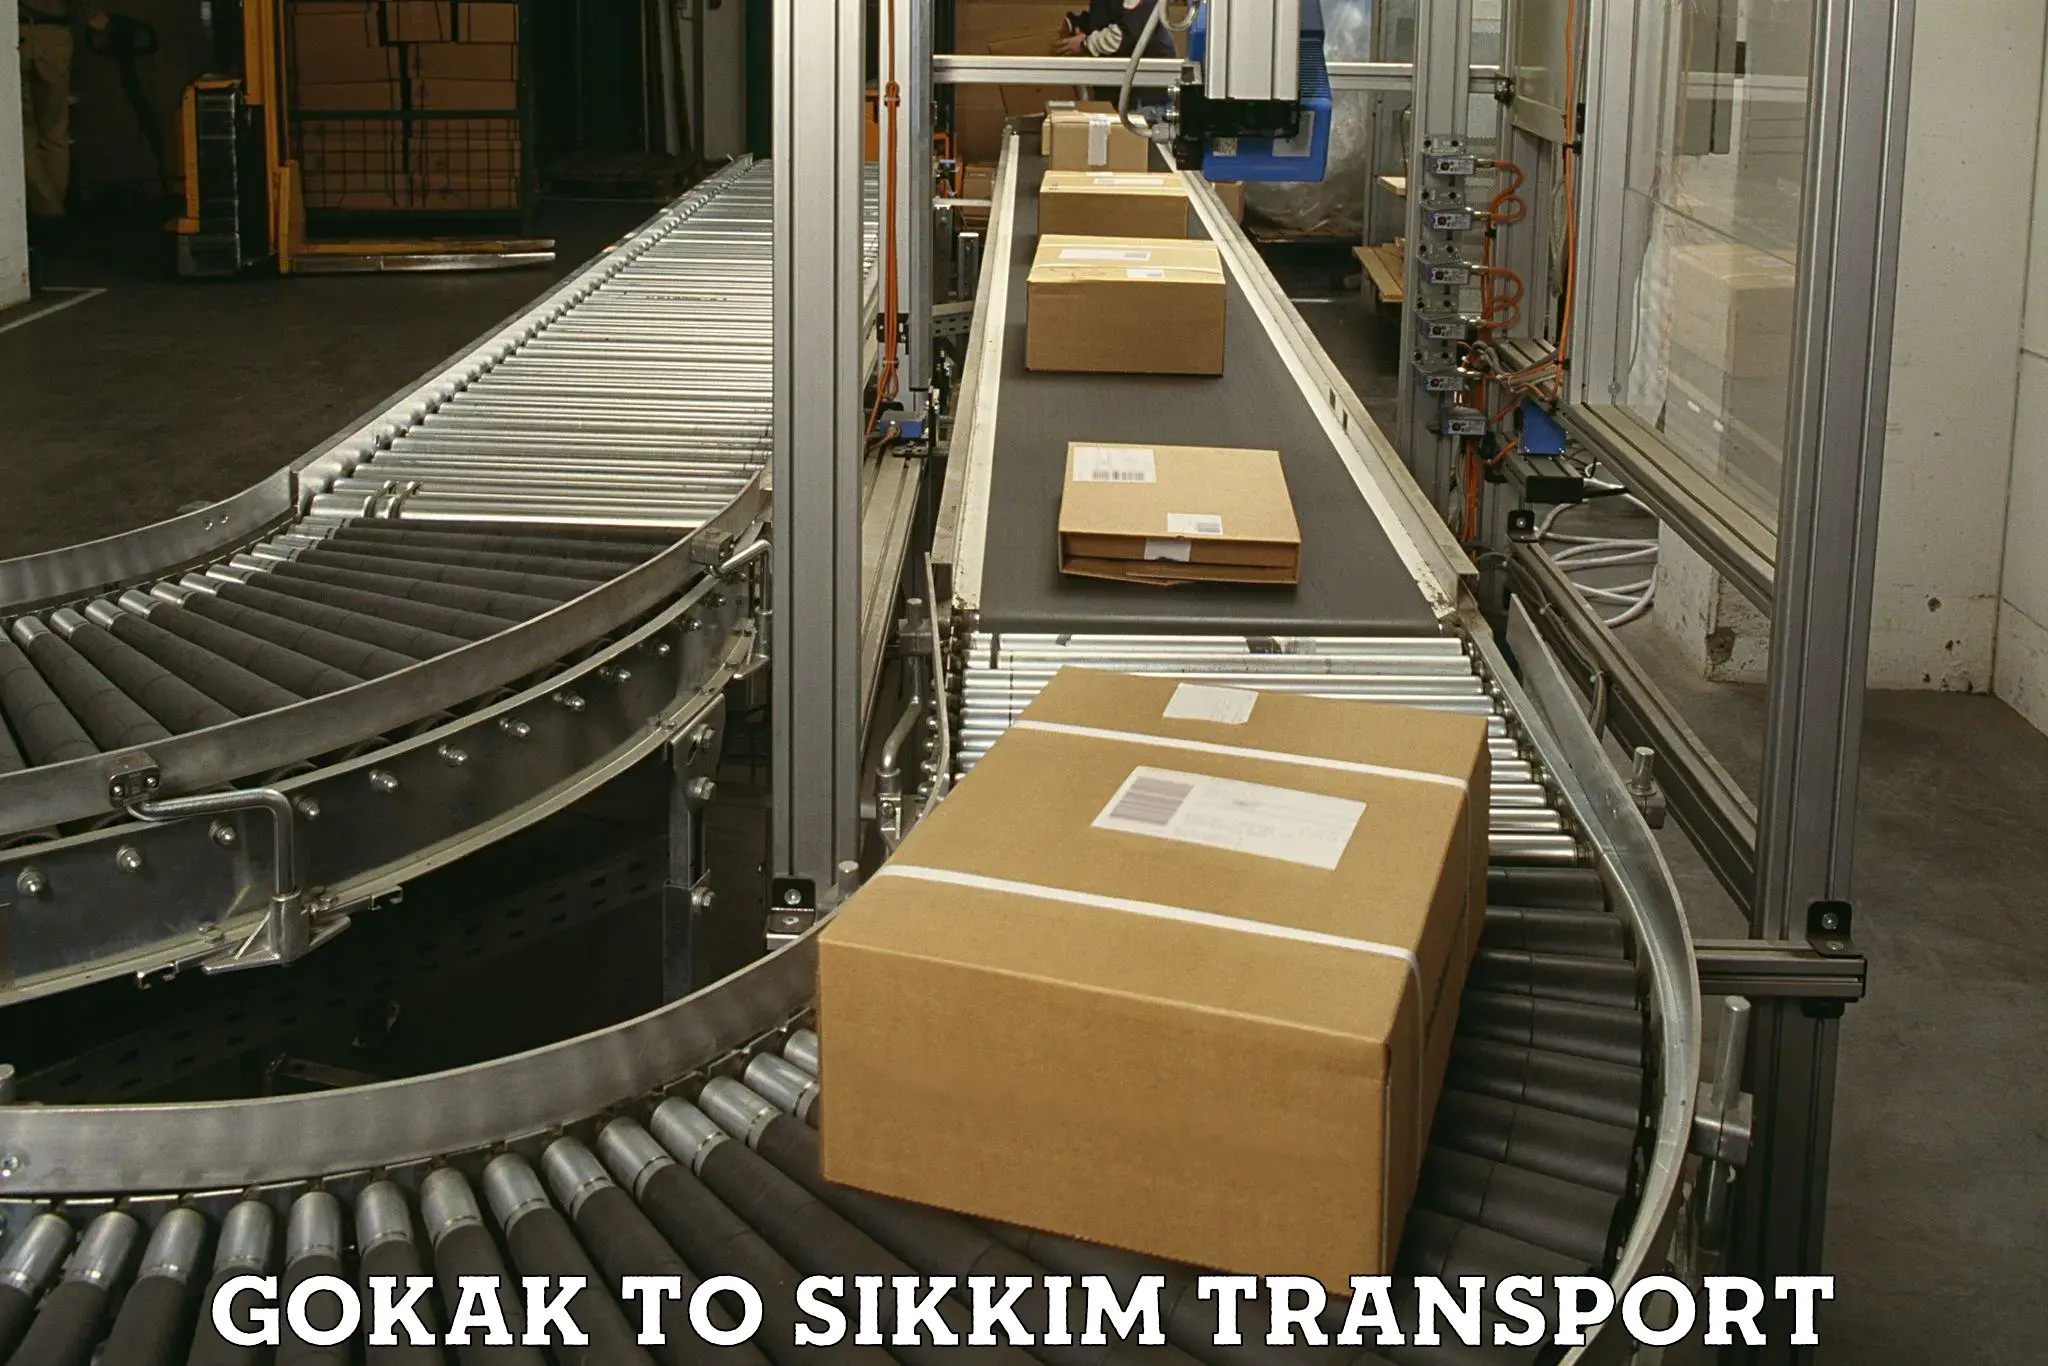 Cargo transport services Gokak to Sikkim